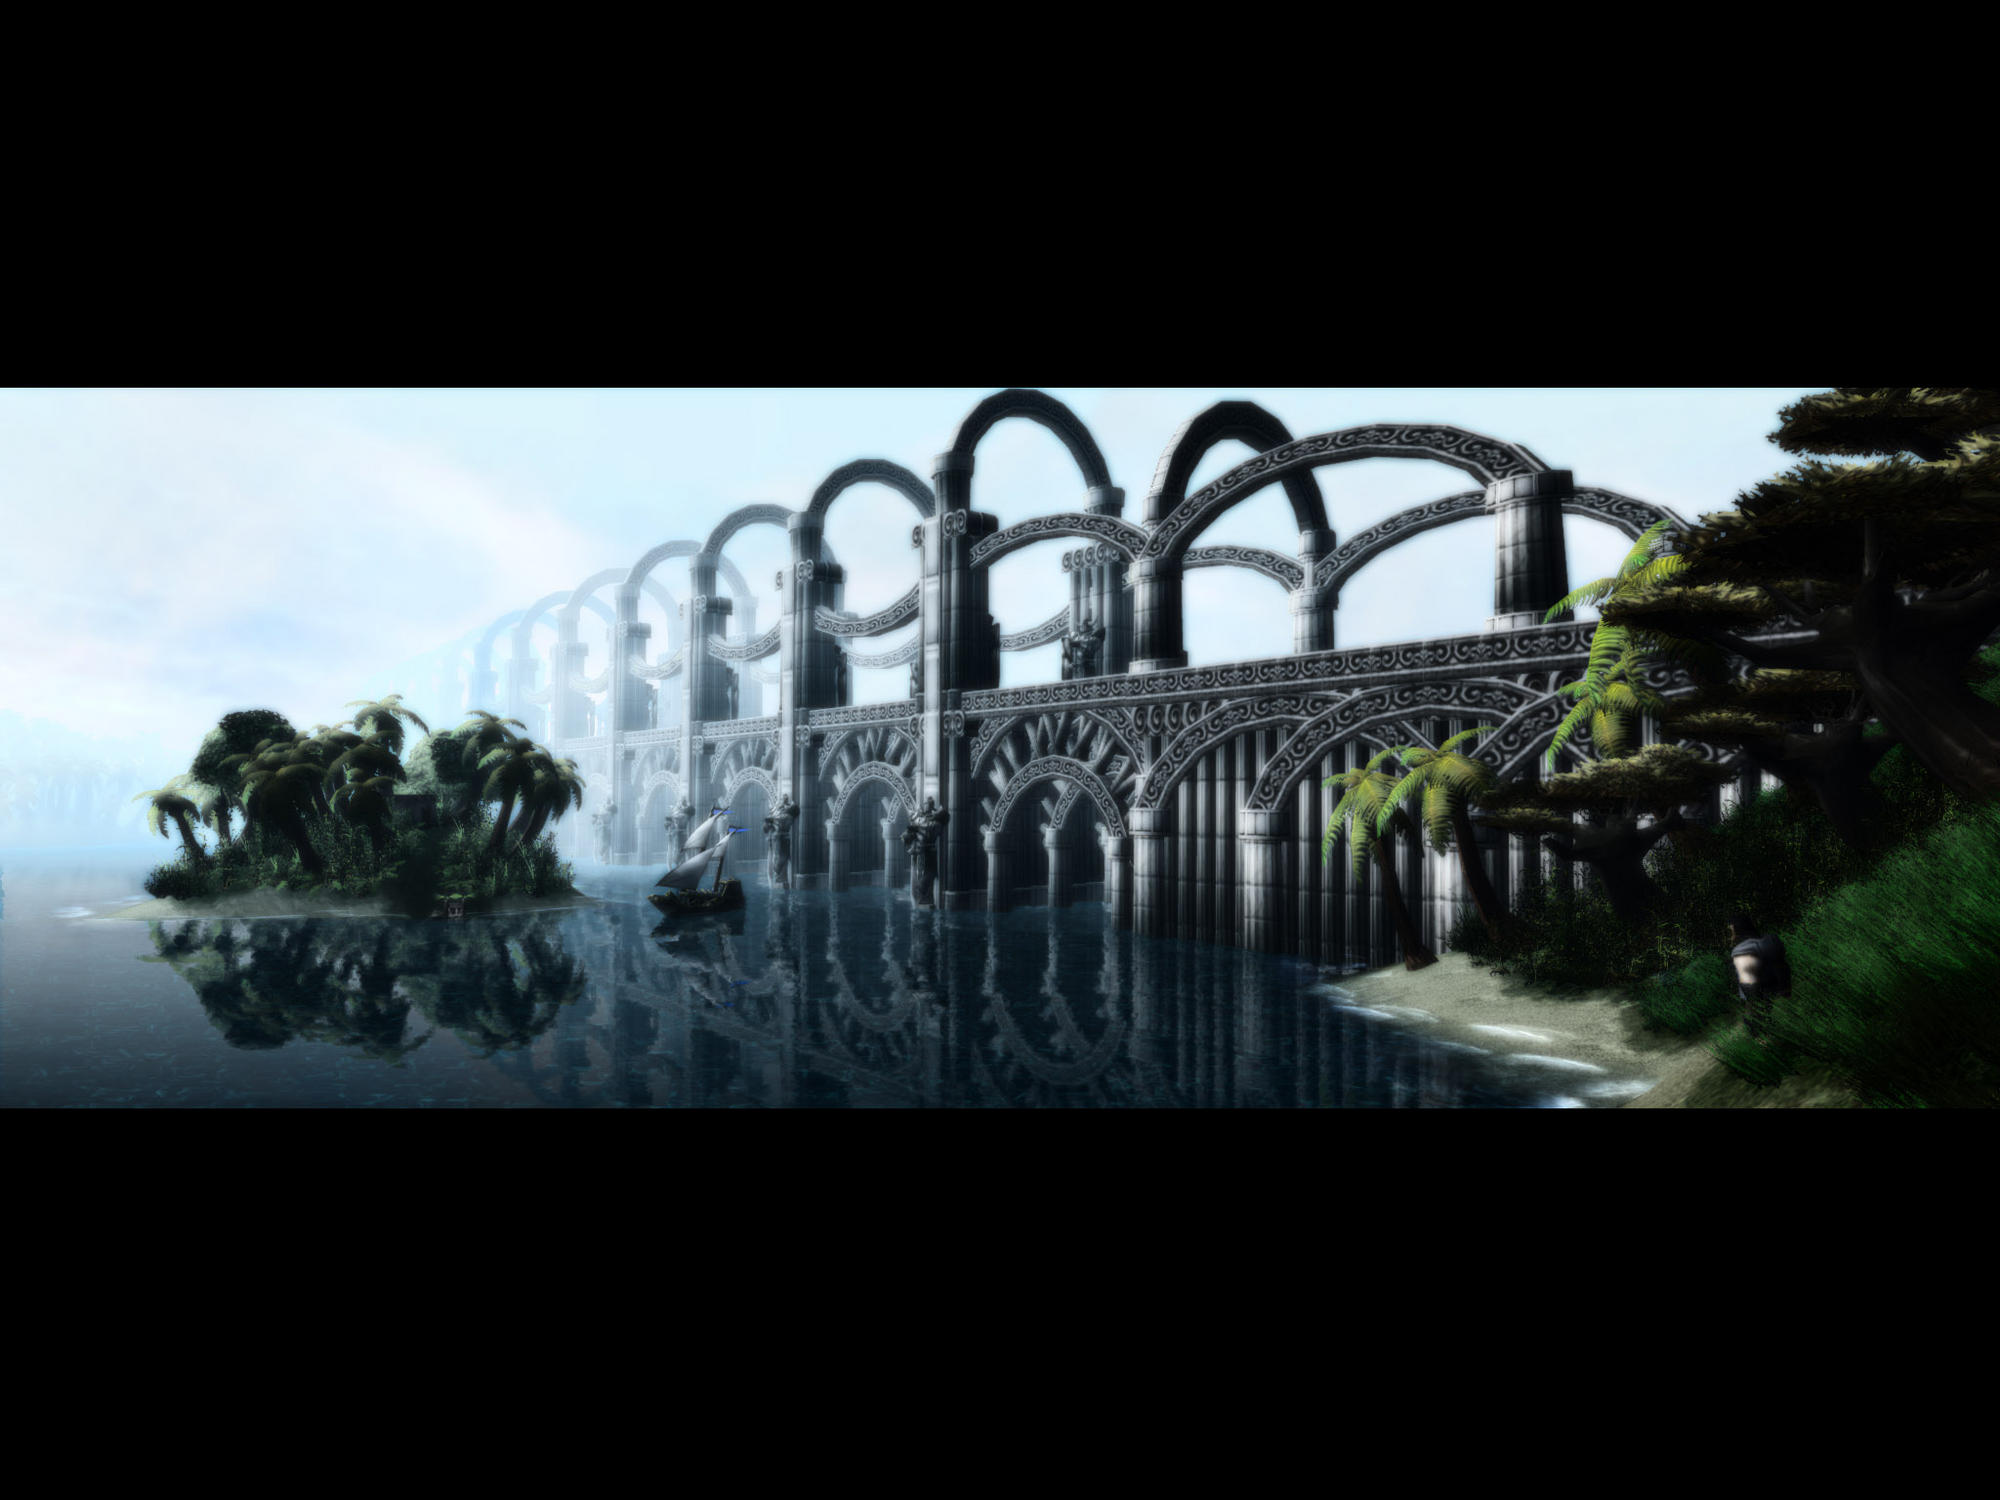 TodK S7 T1 6c Bridge - edited with Photoshop